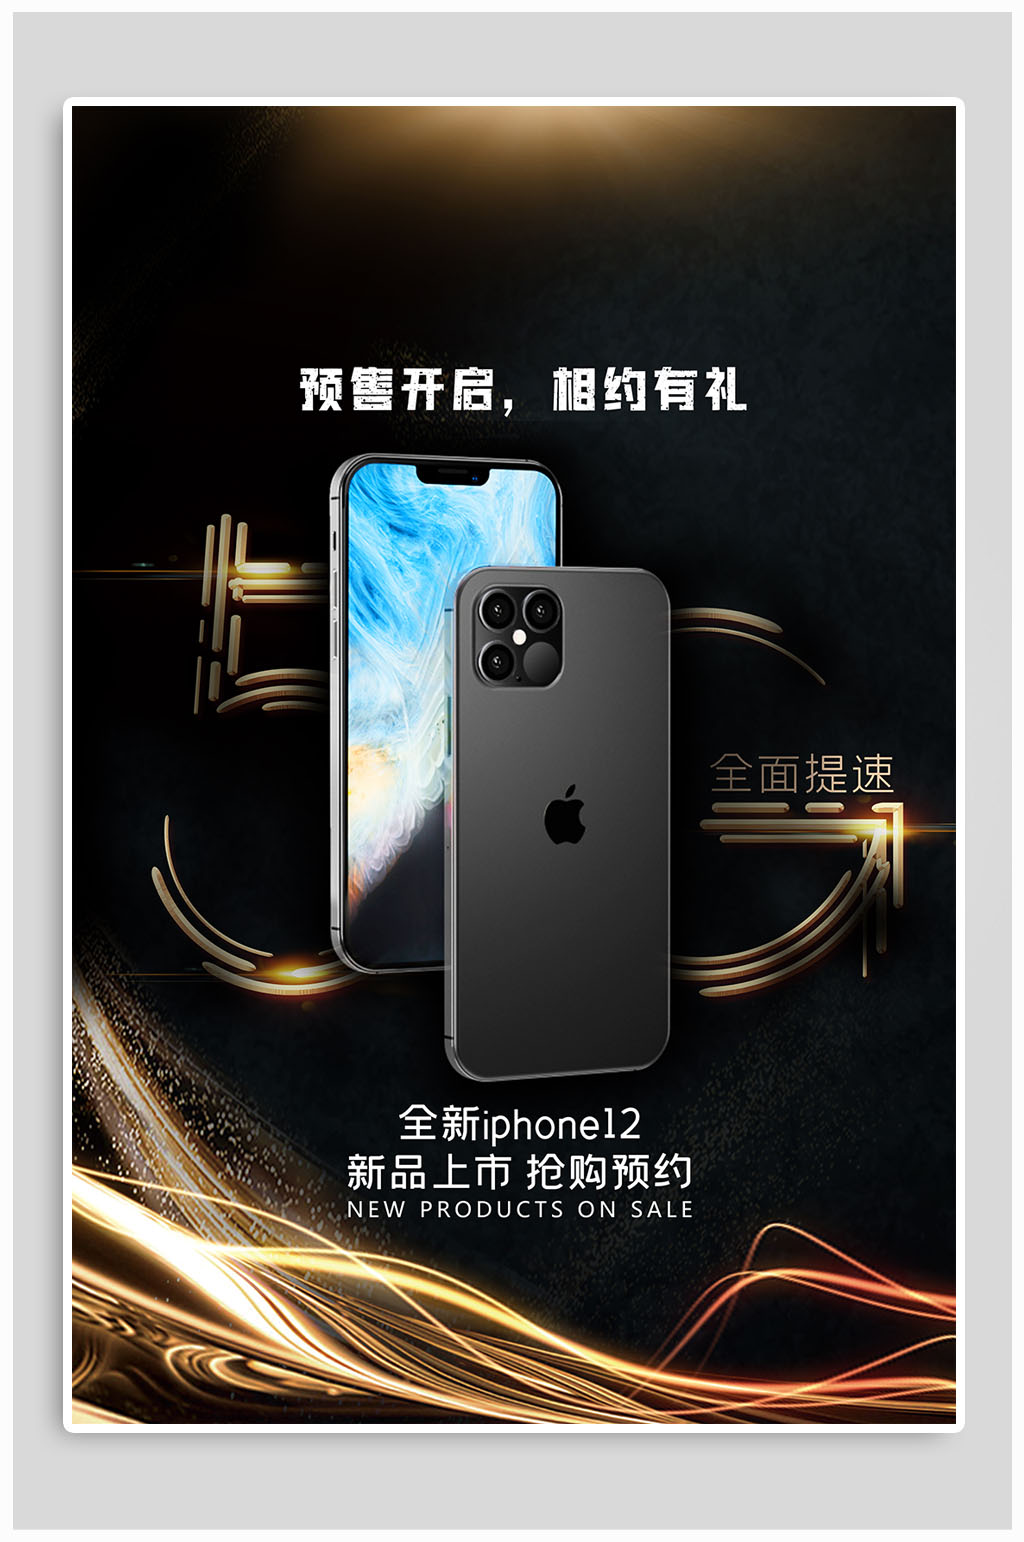 iphone12新品发布宣传海报